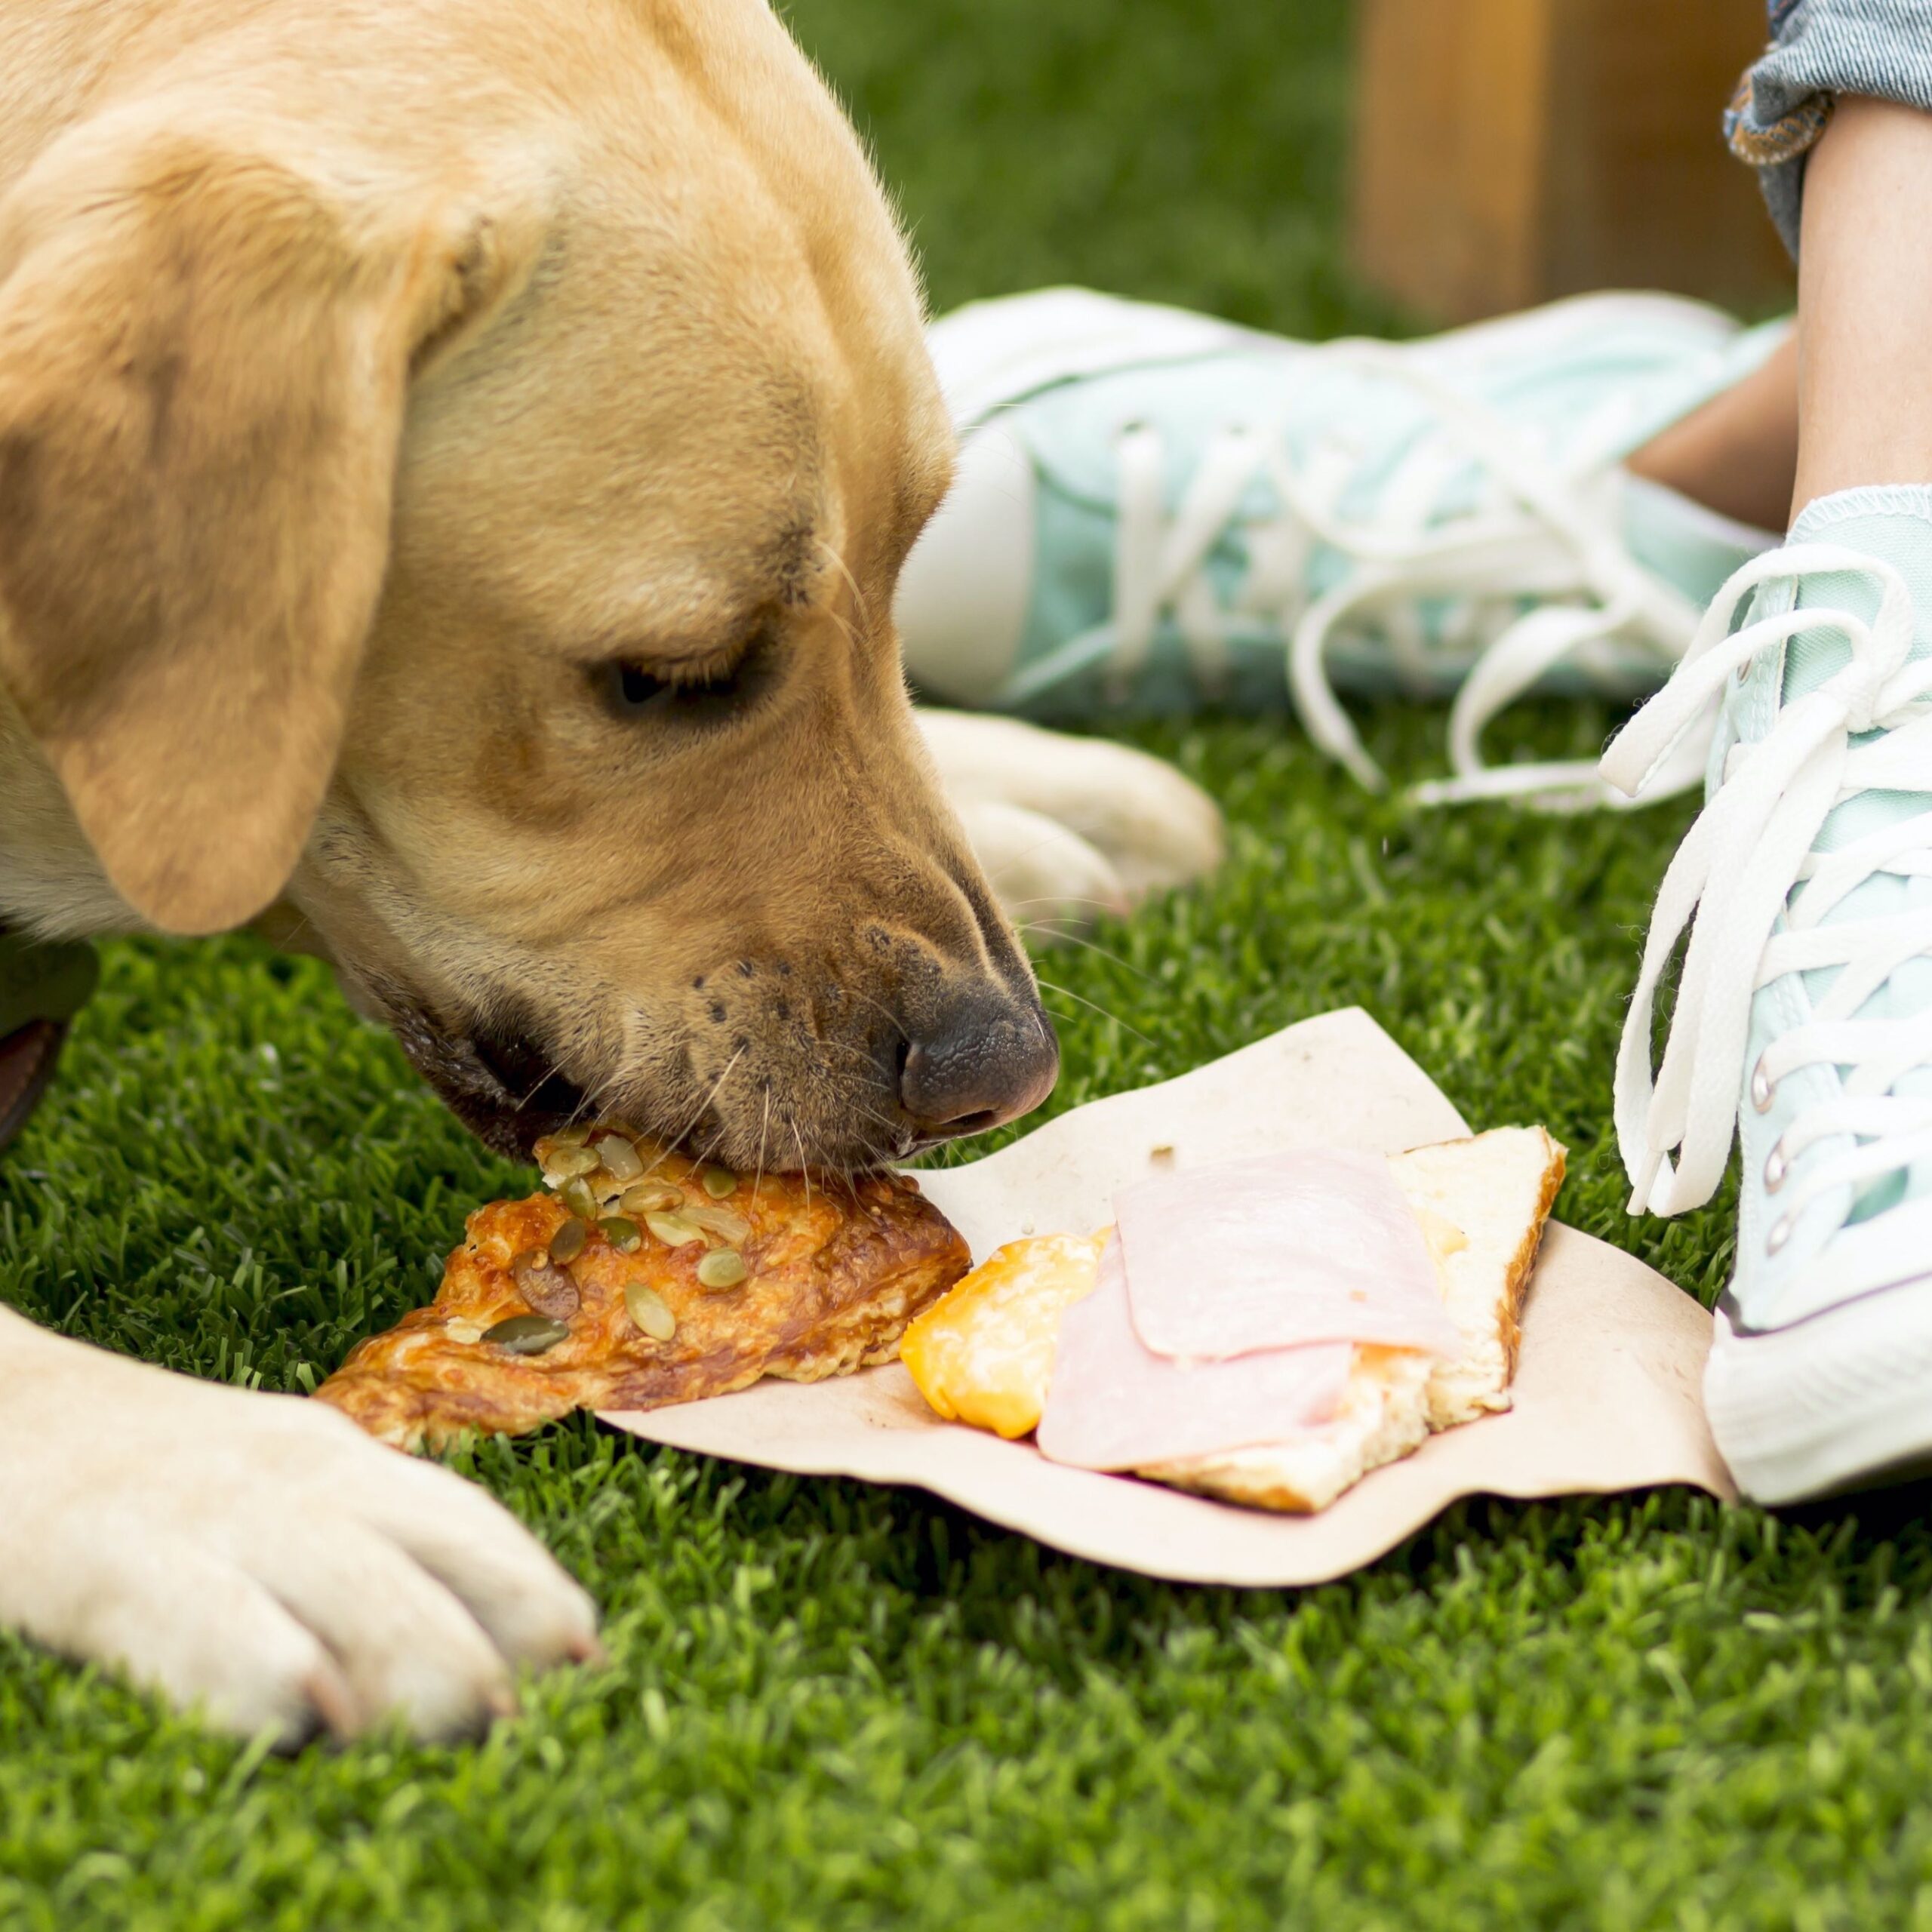 Dog eating human food on grass